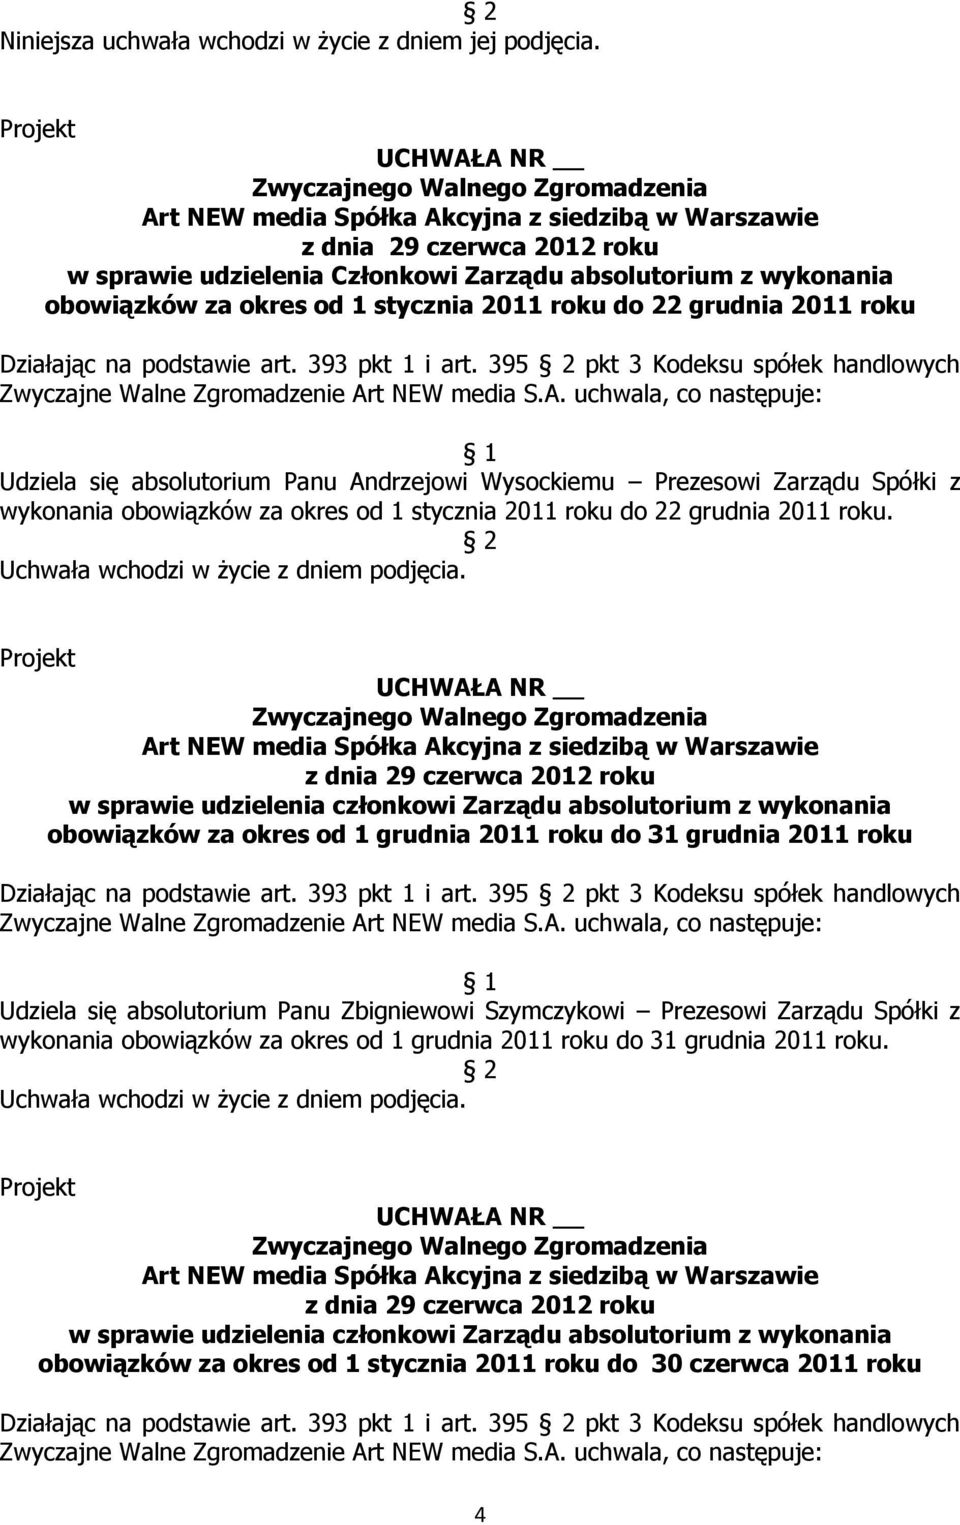 395 pkt 3 Kodeksu spółek handlowych Udziela się absolutorium Panu Andrzejowi Wysockiemu Prezesowi Zarządu Spółki z wykonania obowiązków za okres od 1 stycznia 2011 roku do 22 grudnia 2011 roku.